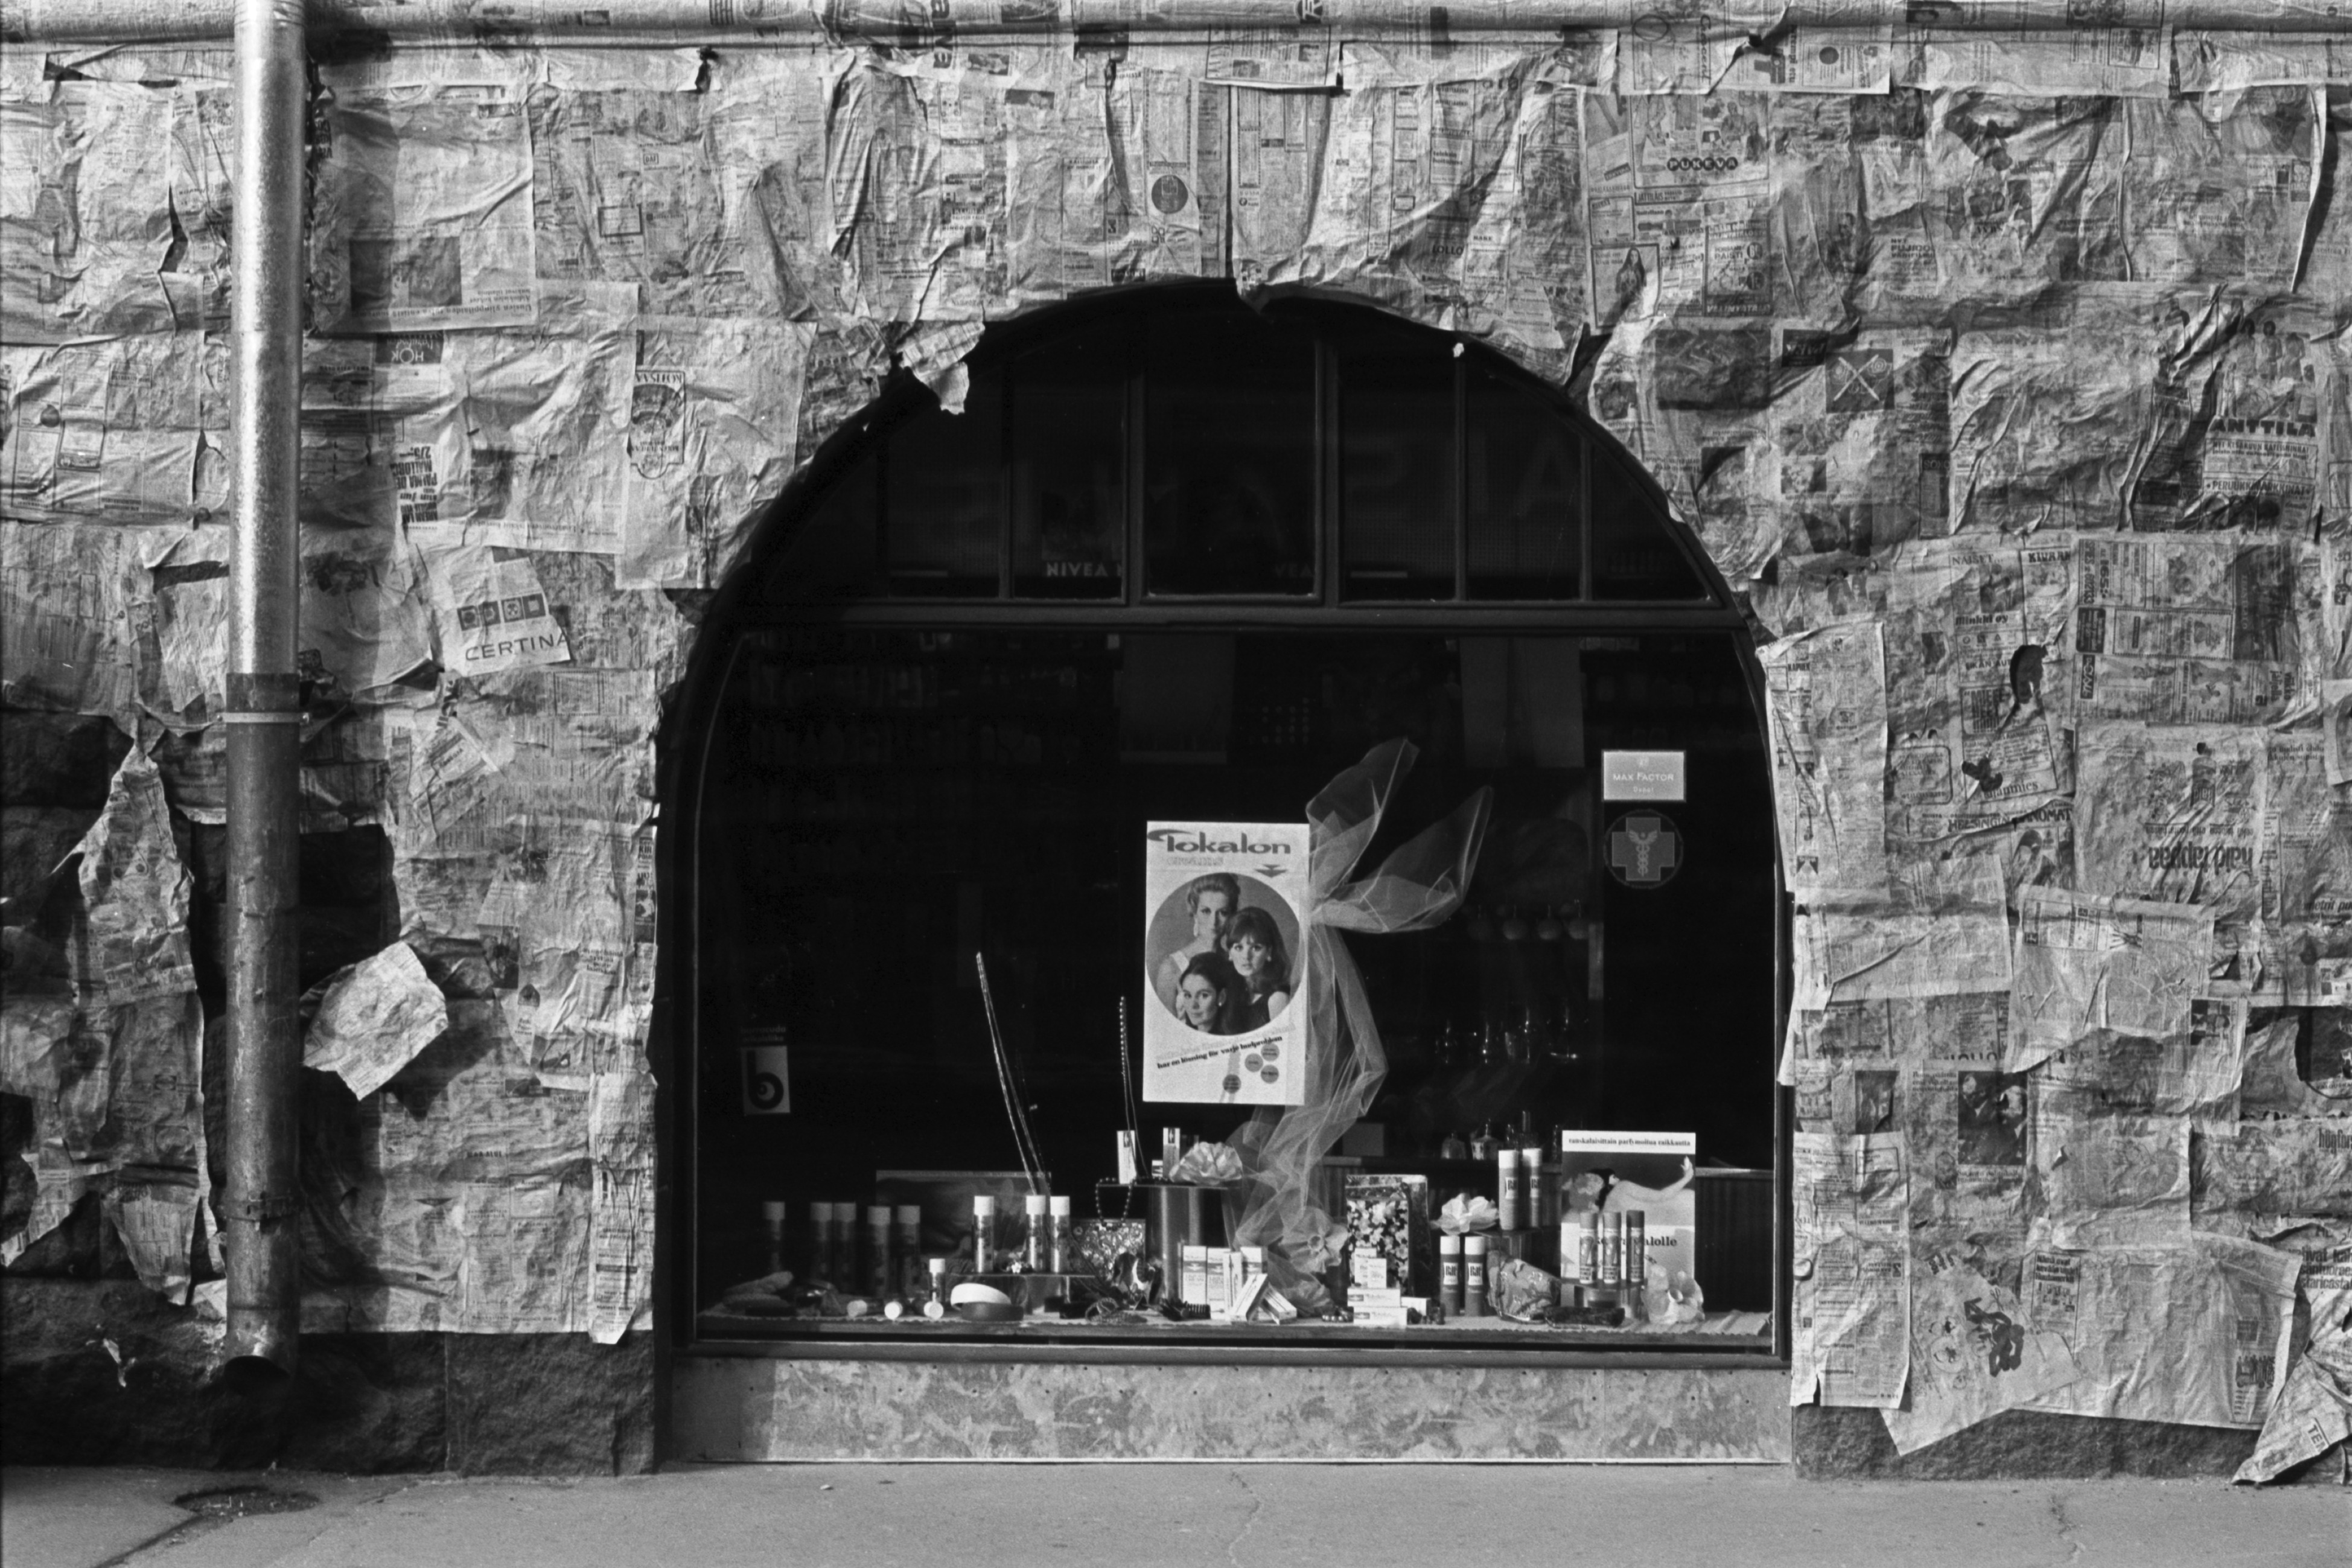 Kruunuvuorenkatu 1. Kruunuvuorenkatu 1:ssä sijaitsevan kemikaliokaupan näyteikkuna talon kivijalassa, joka on suojattu sanomalehdillä maalaustöiden ajaksi.